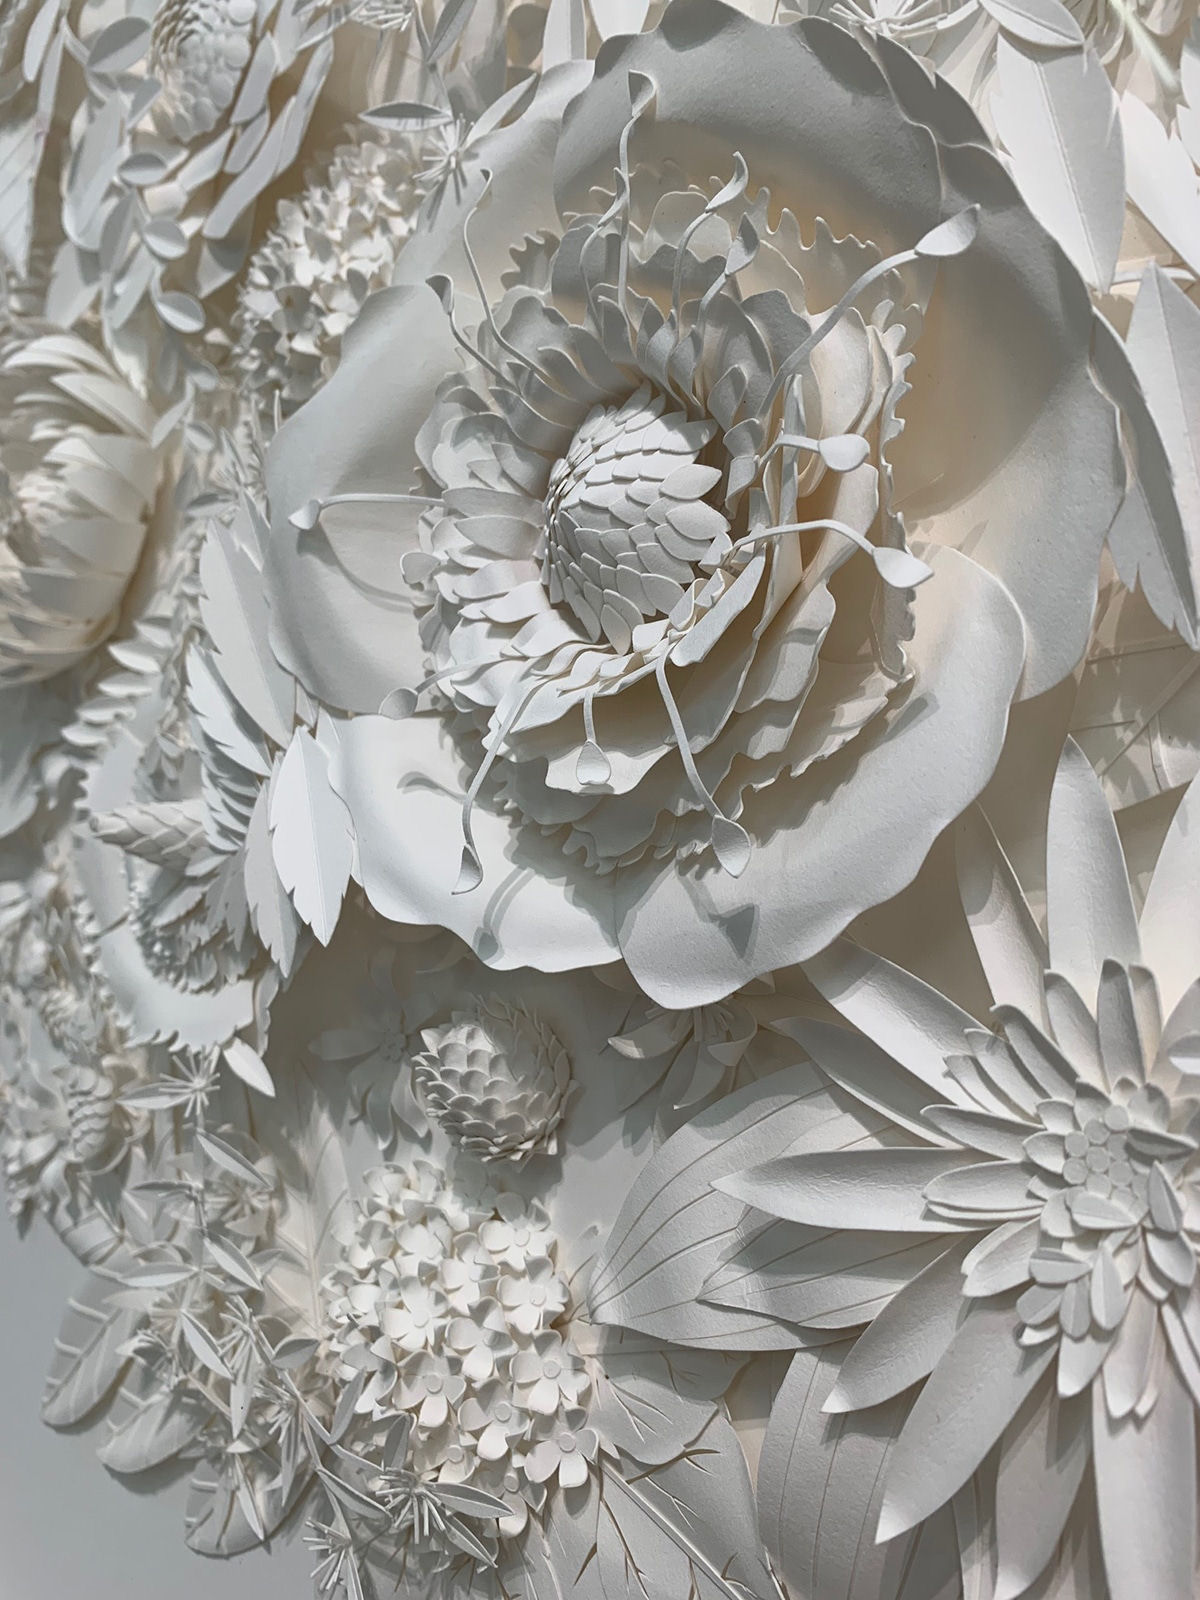 Artista cria 'jardins' exuberantes com flores de papel caprichosamente cortadas 03